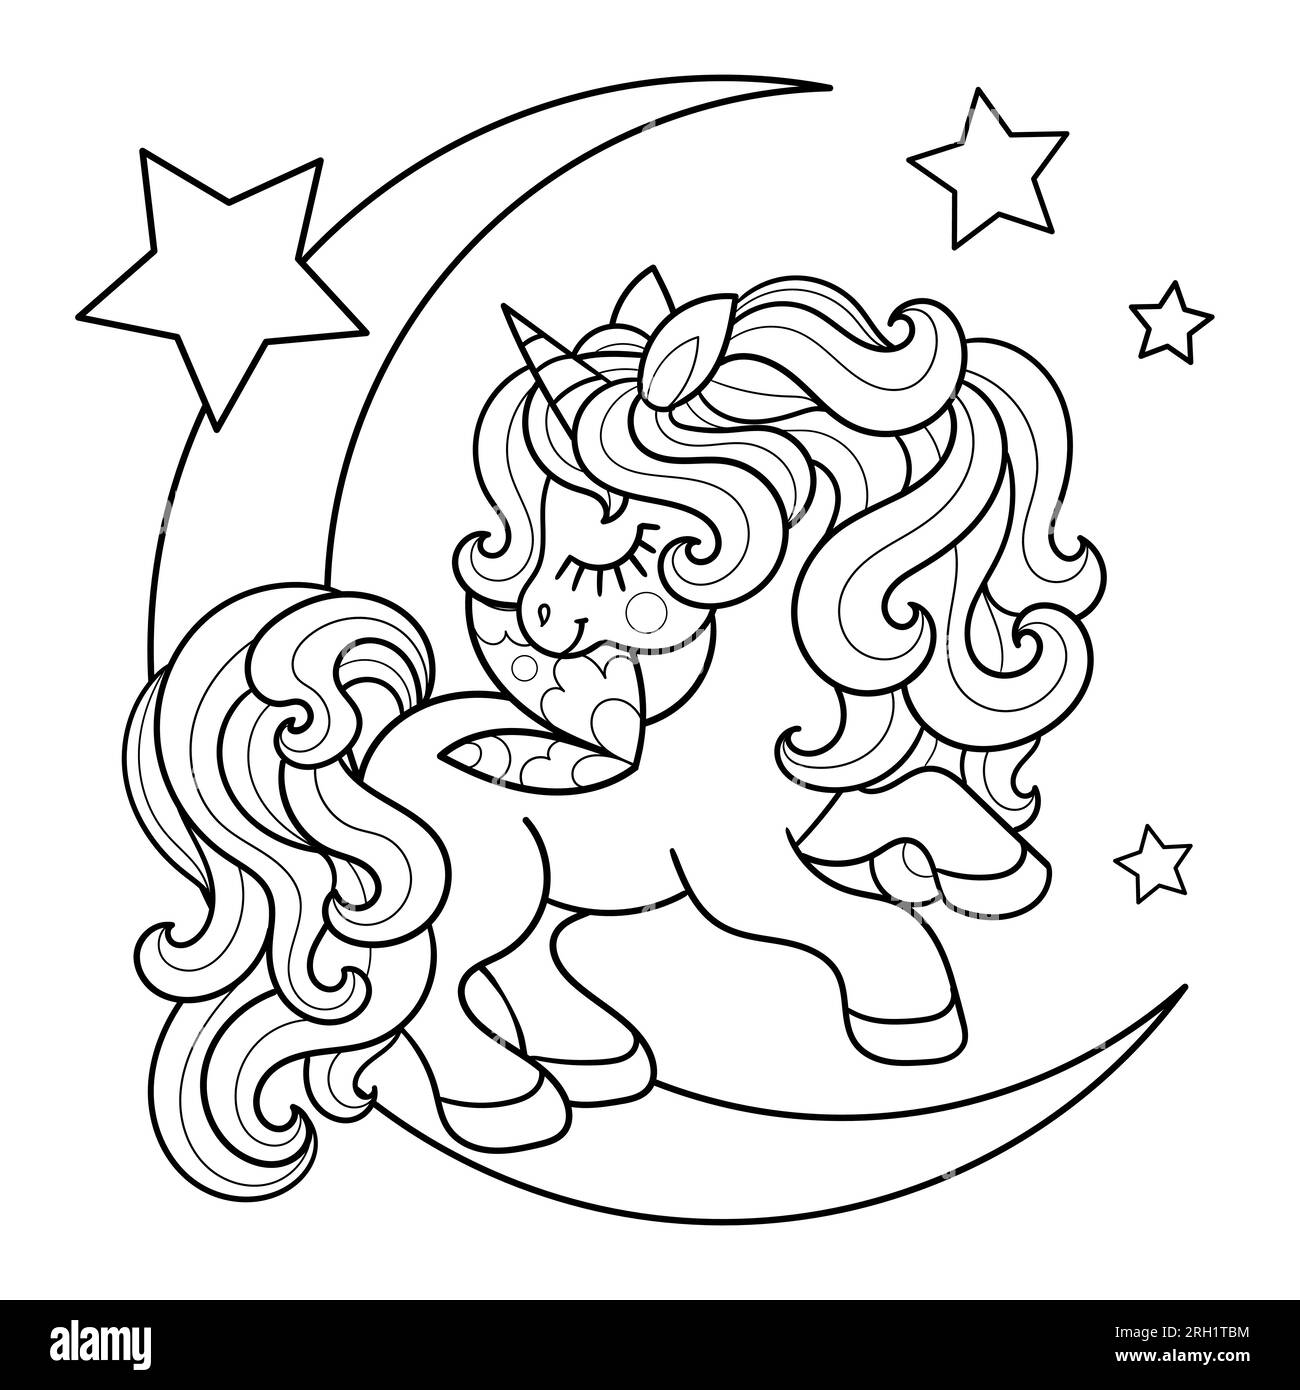 Cartoon Unicorn saute sur la lune avec des étoiles. Dessin au trait noir et blanc. Pour la conception pour enfants de livres de coloriage, impressions, affiches, autocollants, c Illustration de Vecteur